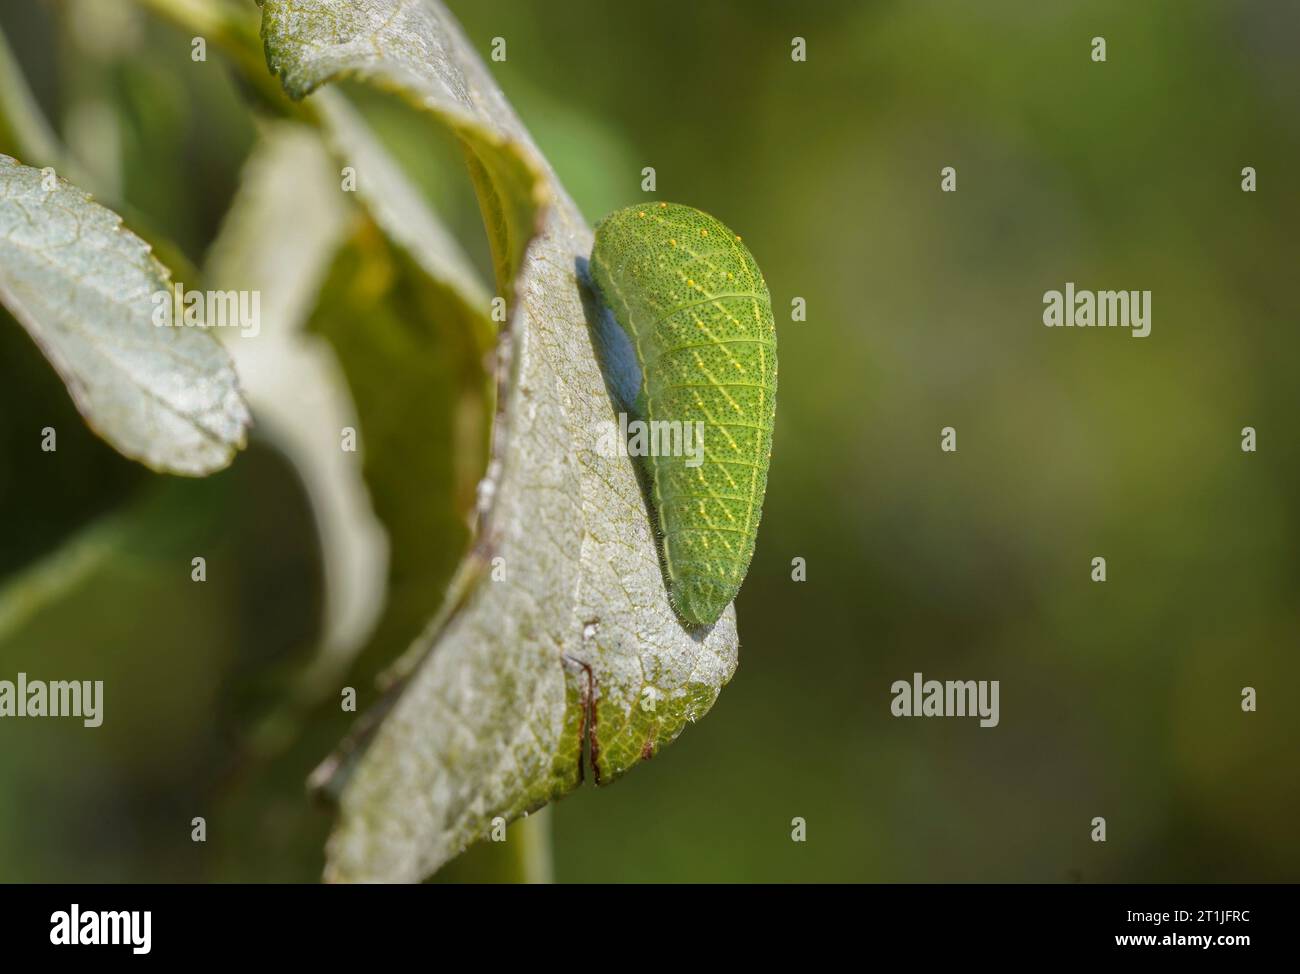 Chenille d'Iphiclides feisthamelii, ibérique rare Swallowtail Butterfly sur une feuille de pruneau. Andalousie, Espagne. Banque D'Images